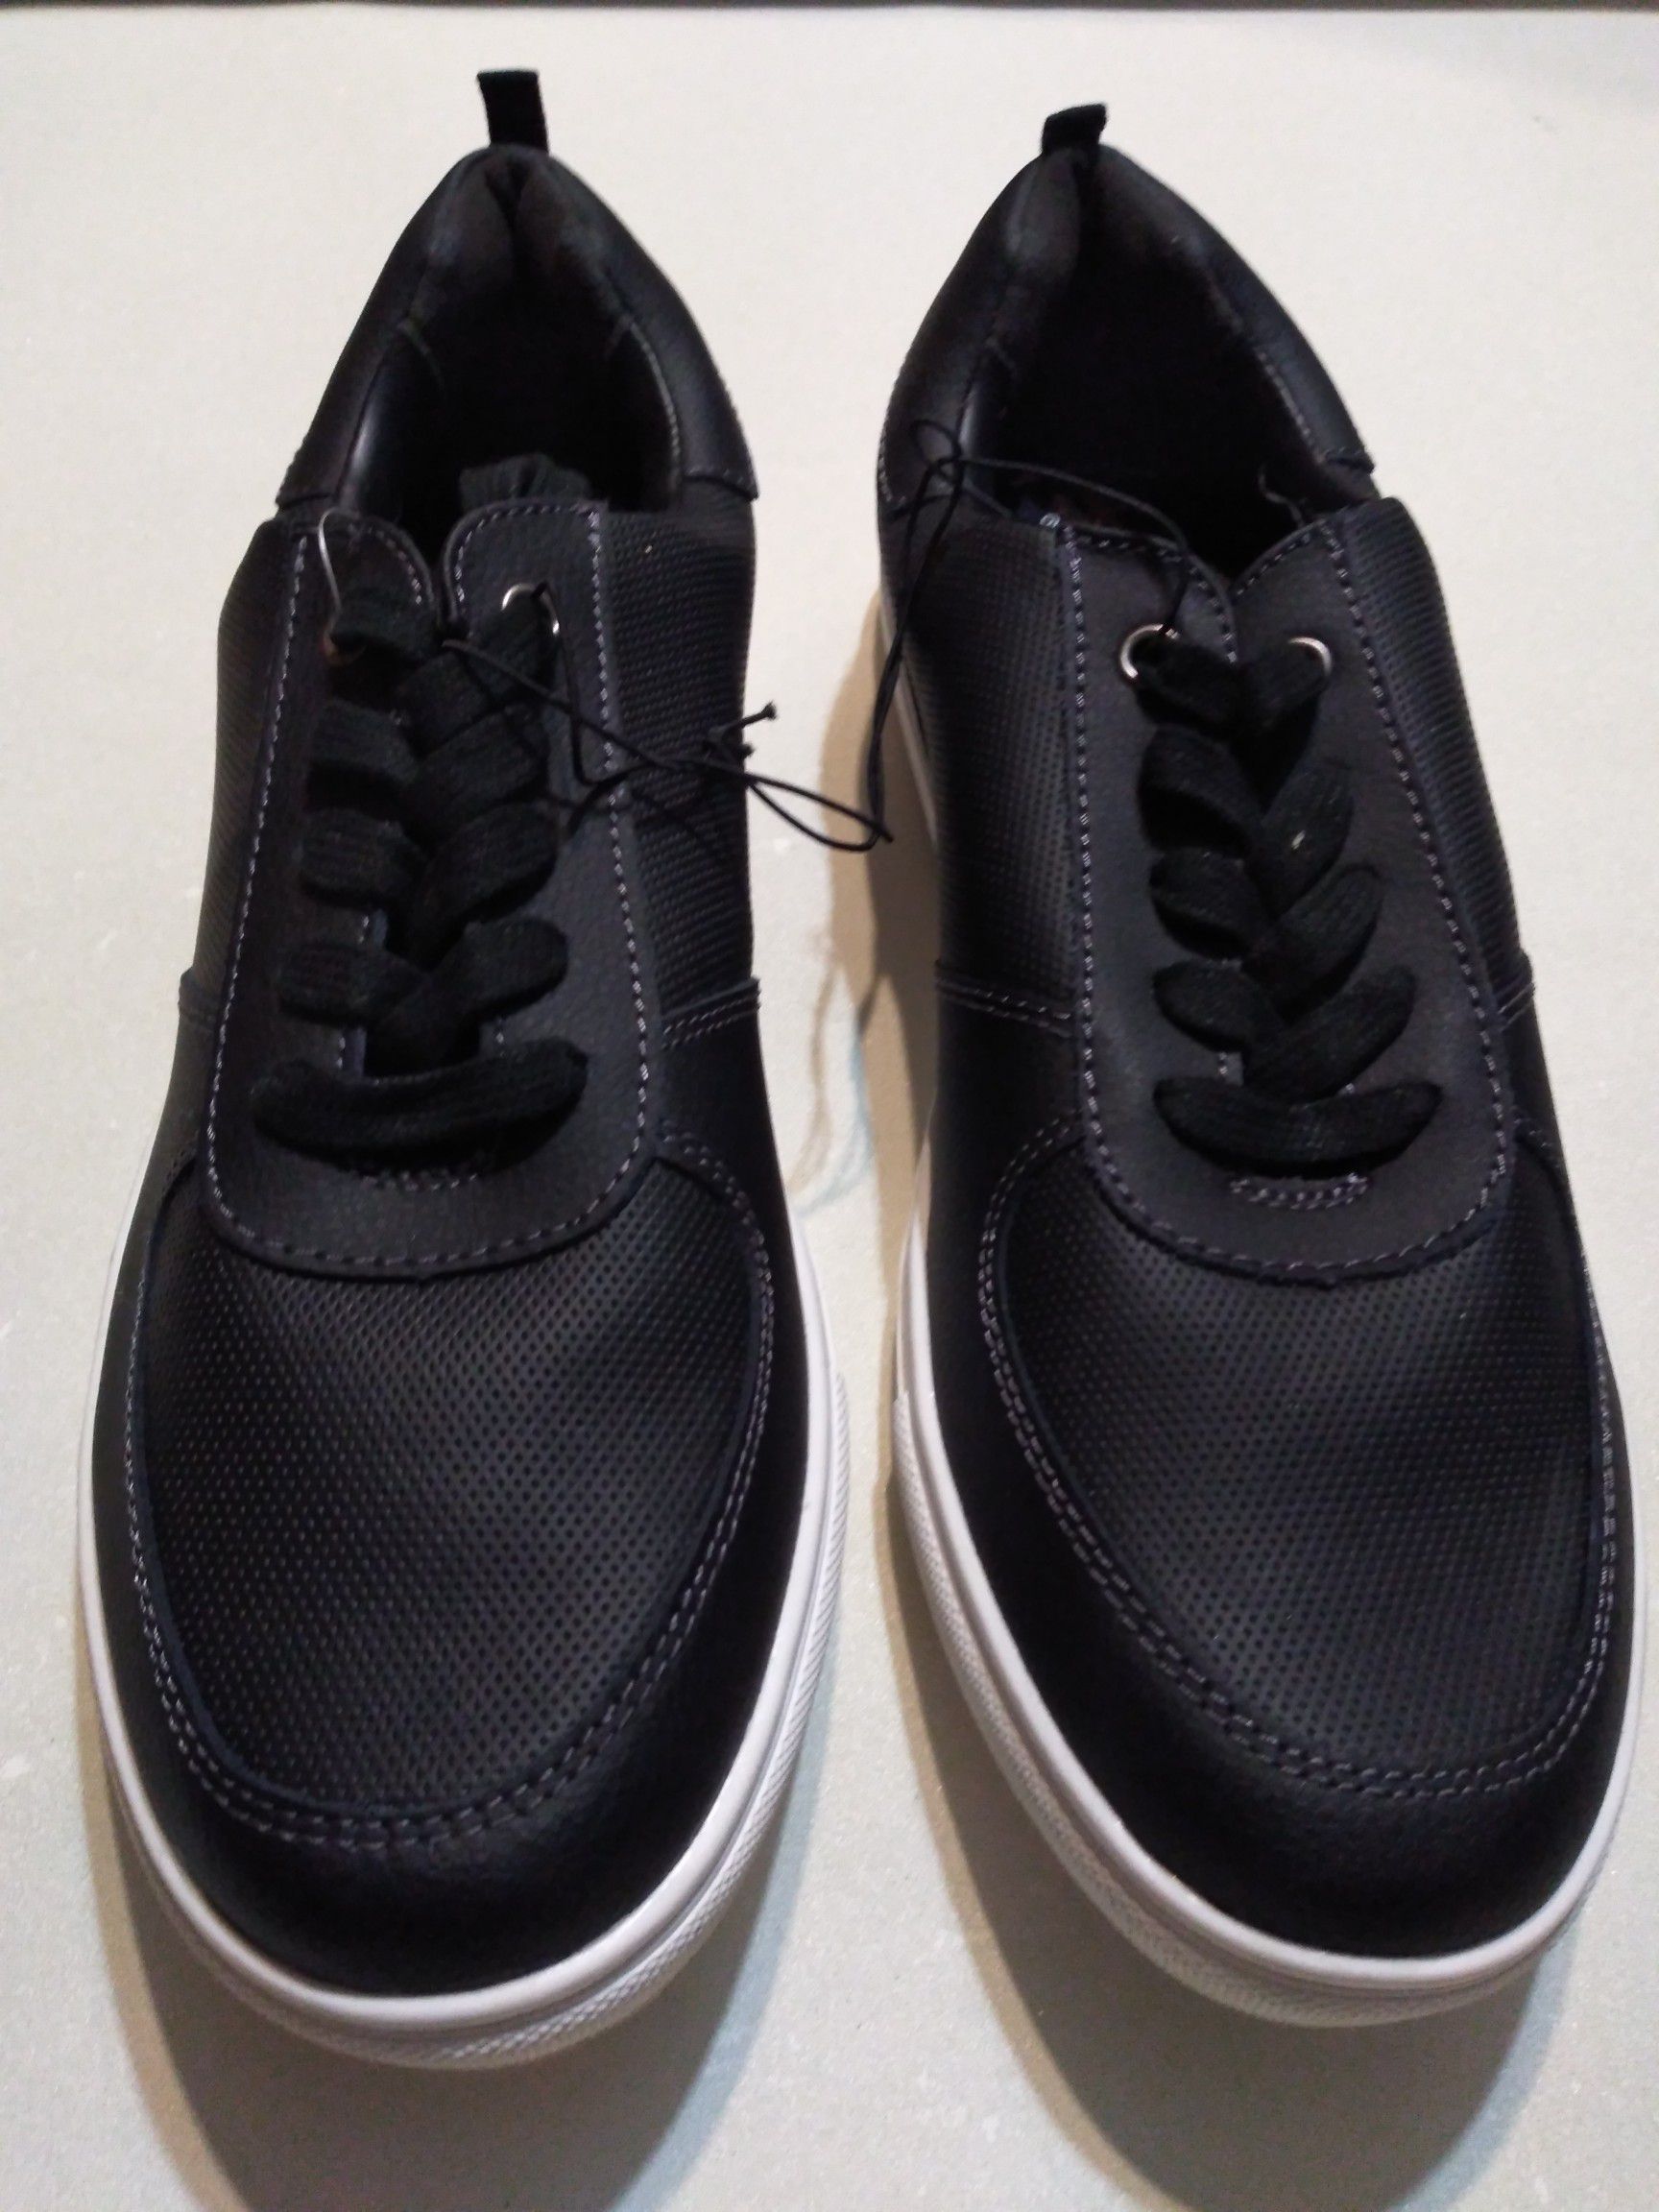 Men's vintage shoes size 10